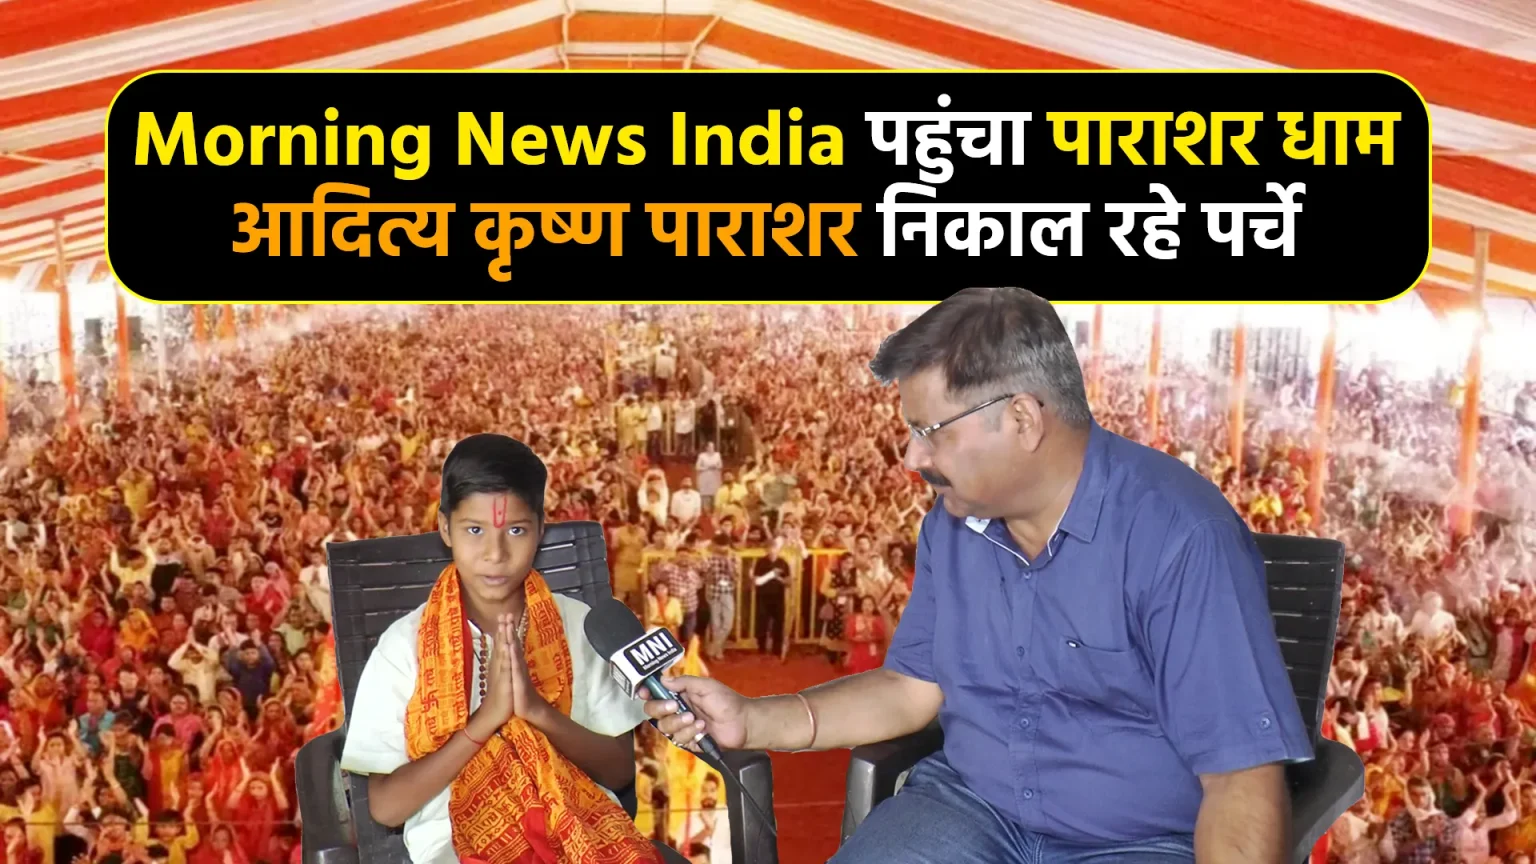 Morning News India at Parashar Dham